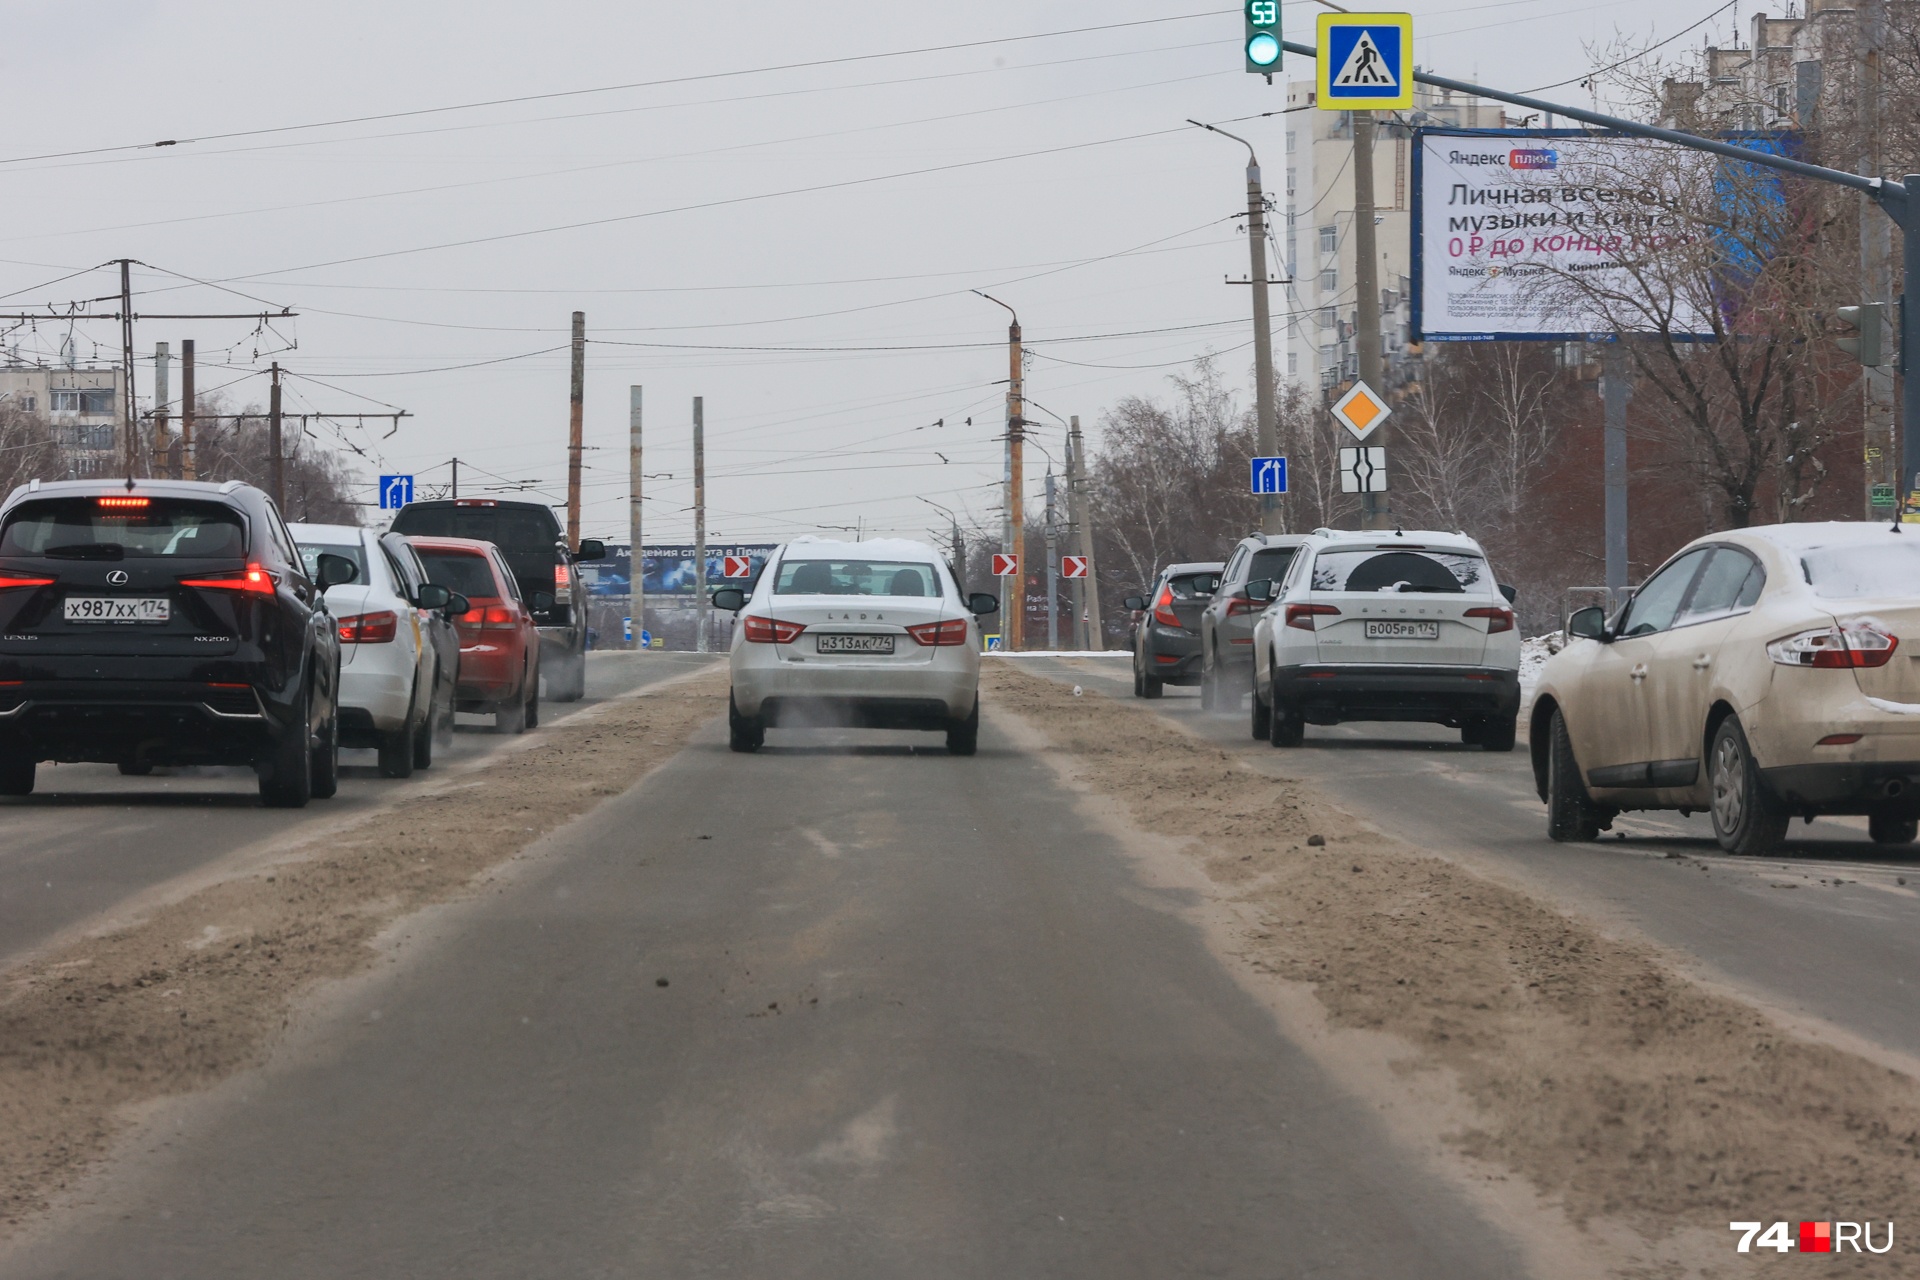 Подрядчиков критикуют, штрафуют за снег на дорогах, но пока проблему плохой уборки дорог не могут решить